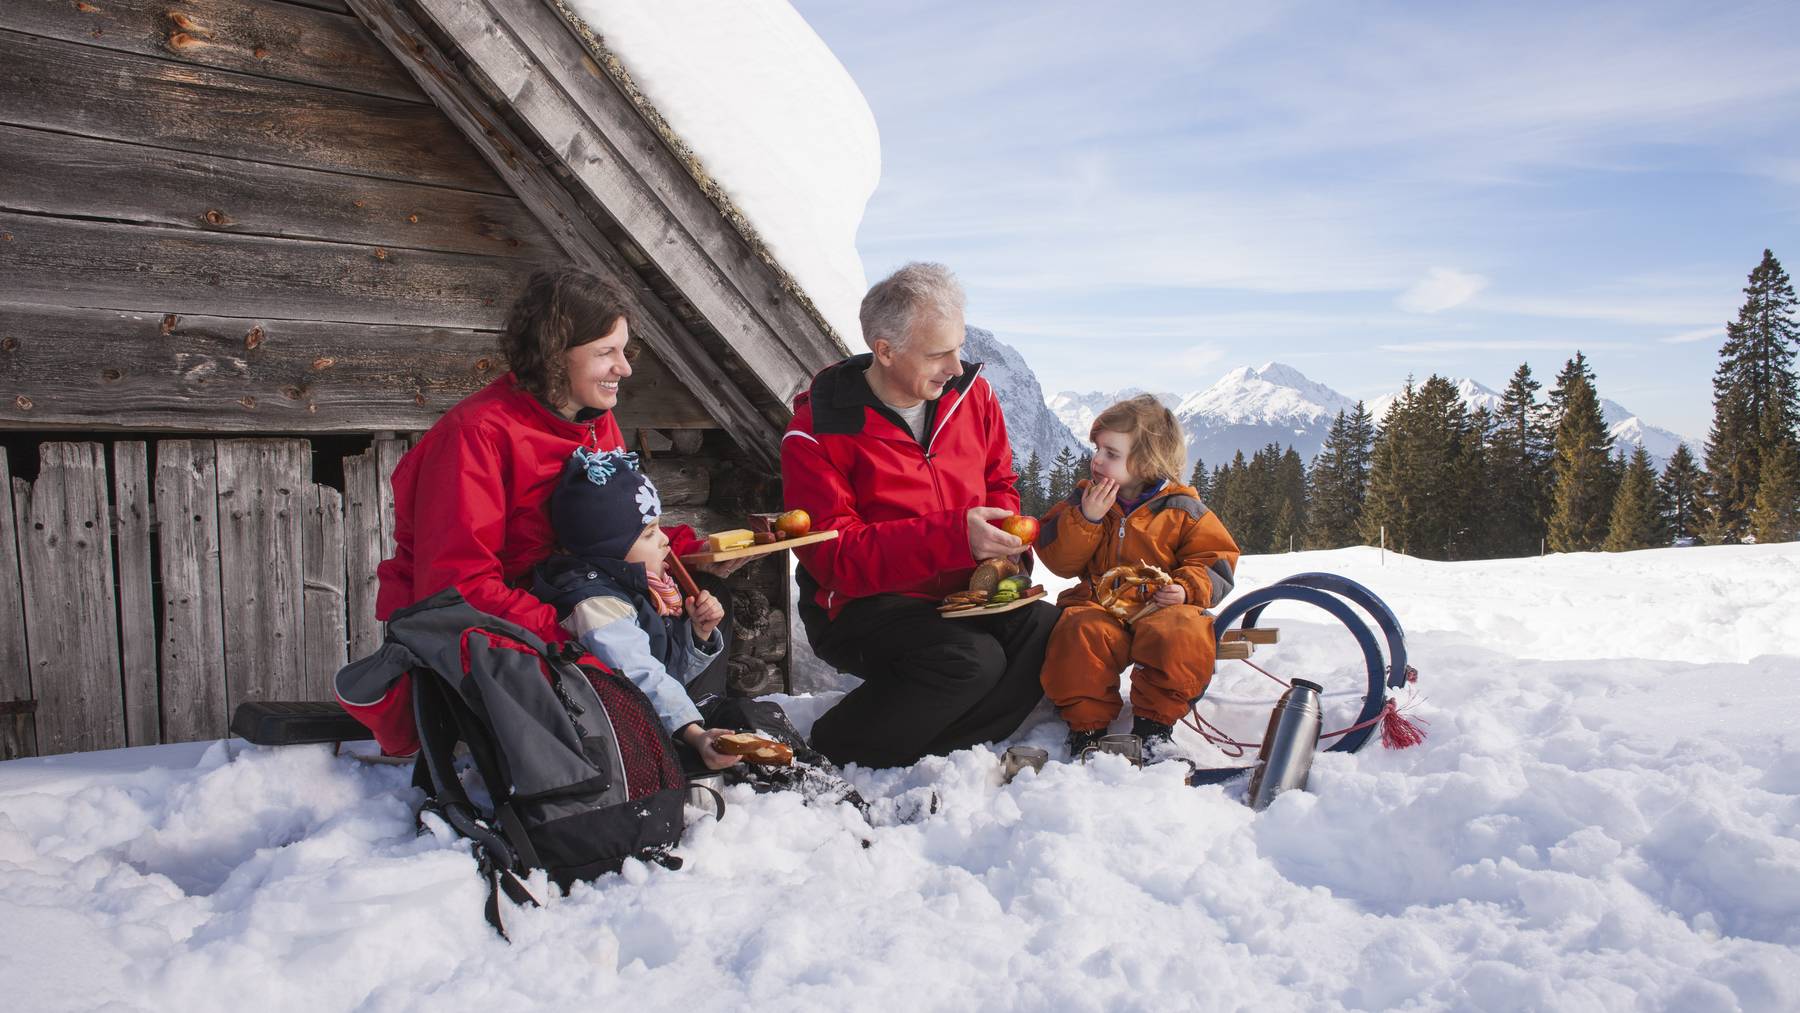 Im Schnee ein Picknick machen anstatt im Bergrestaurant in der Menschenmenge